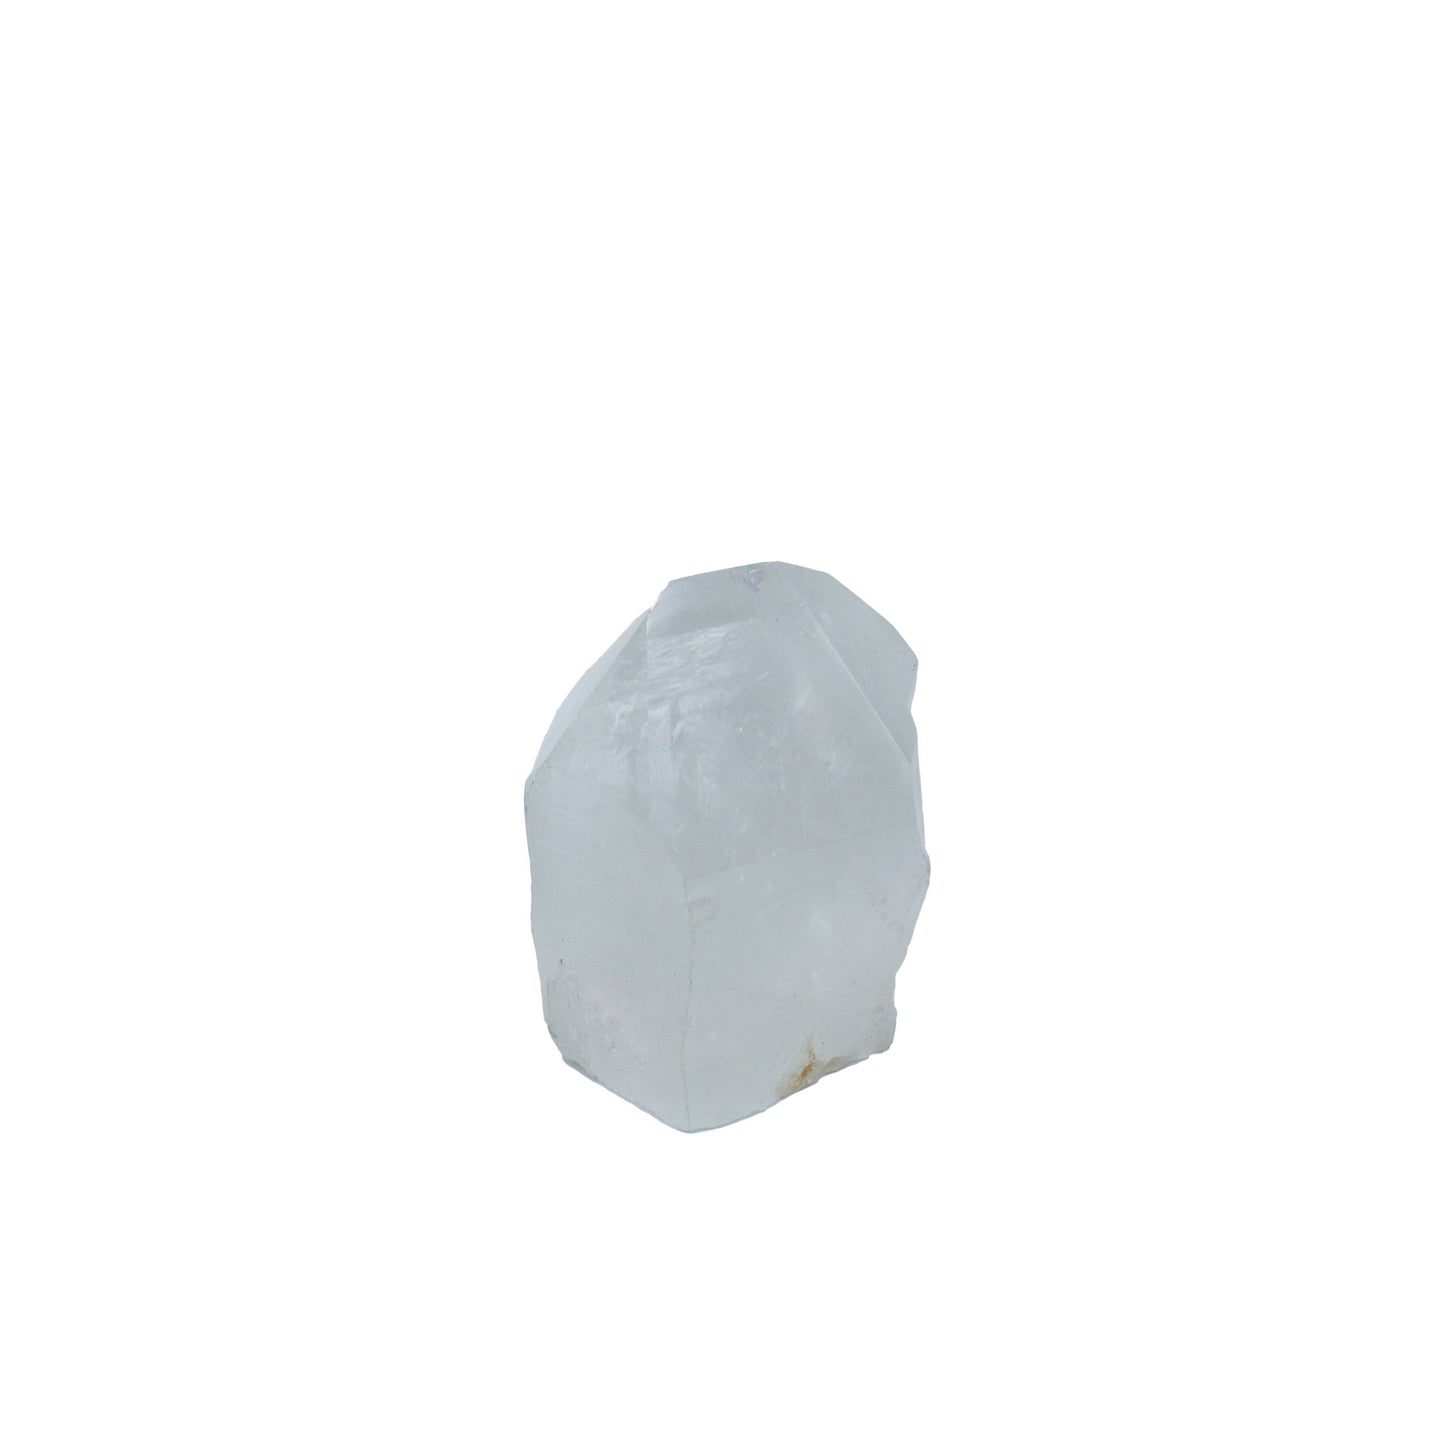 piec of cut white quartz